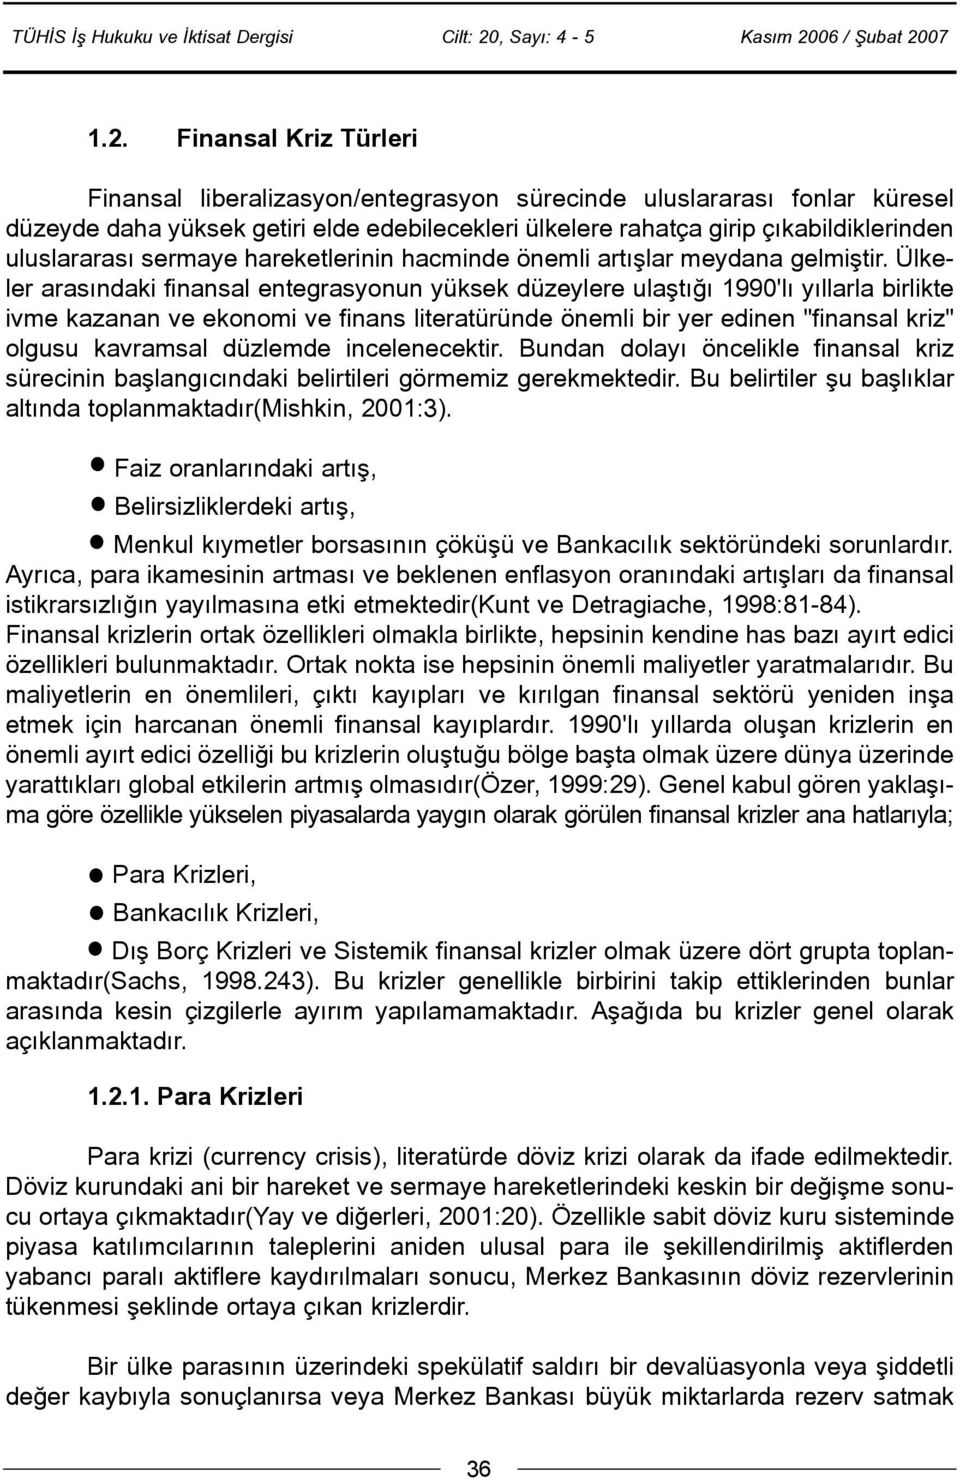 Ülkeler arasýndaki finansal entegrasyonun yüksek düzeylere ulaþtýðý 1990'lý yýllarla birlikte ivme kazanan ve ekonomi ve finans literatüründe önemli bir yer edinen "finansal kriz" olgusu kavramsal